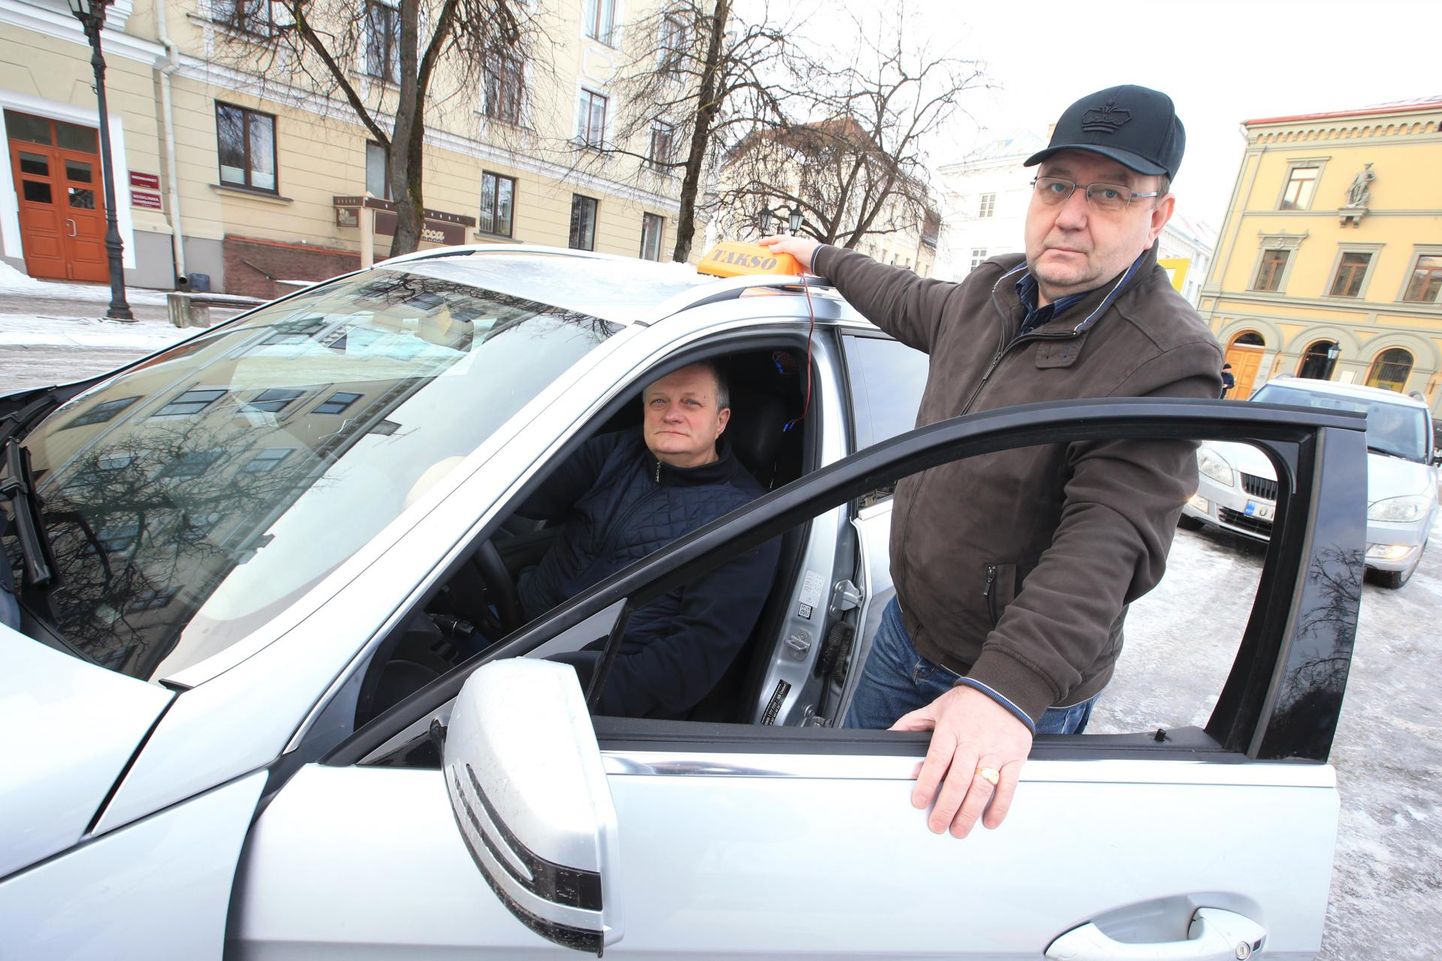 Tartu taksojuhid Erik Rosenthal ja Aivar Nisu (autos) on aastaid tagunud rauda, et erinevatele taksodele kehtestataks ühtsed reeglid. Seni tulemust pole.